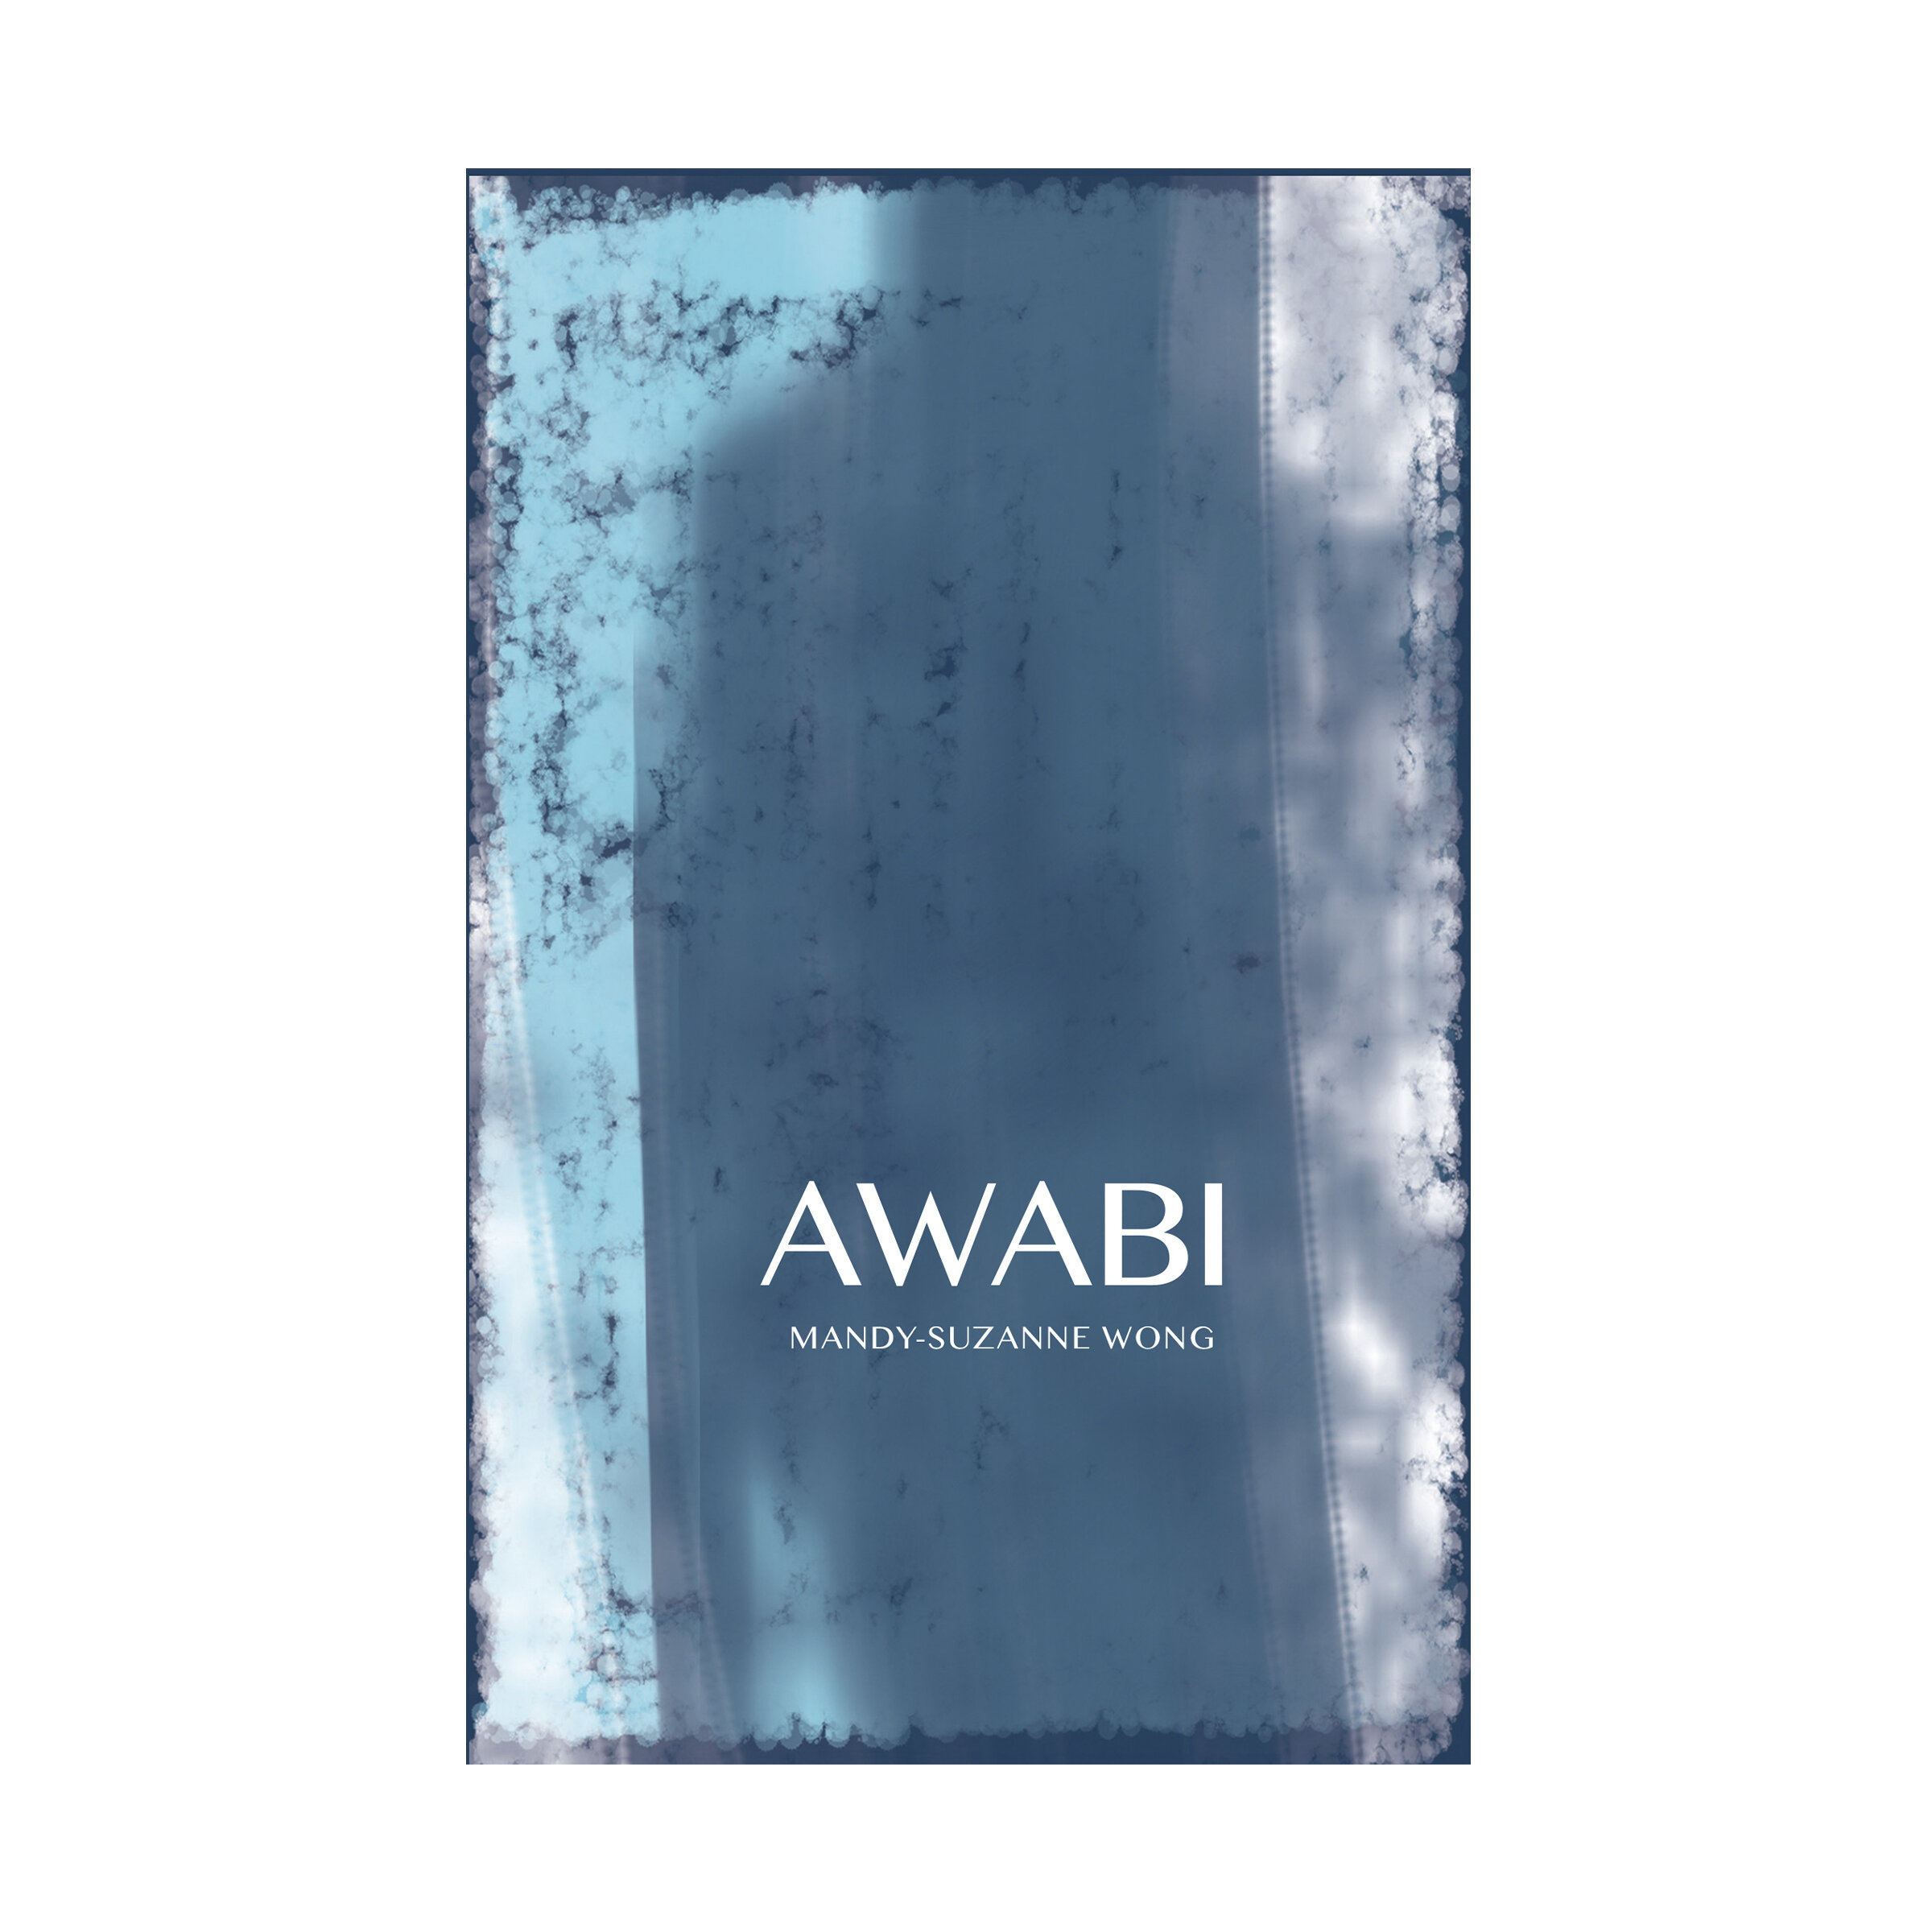 Awabi by Mandy-Suzanne Wong